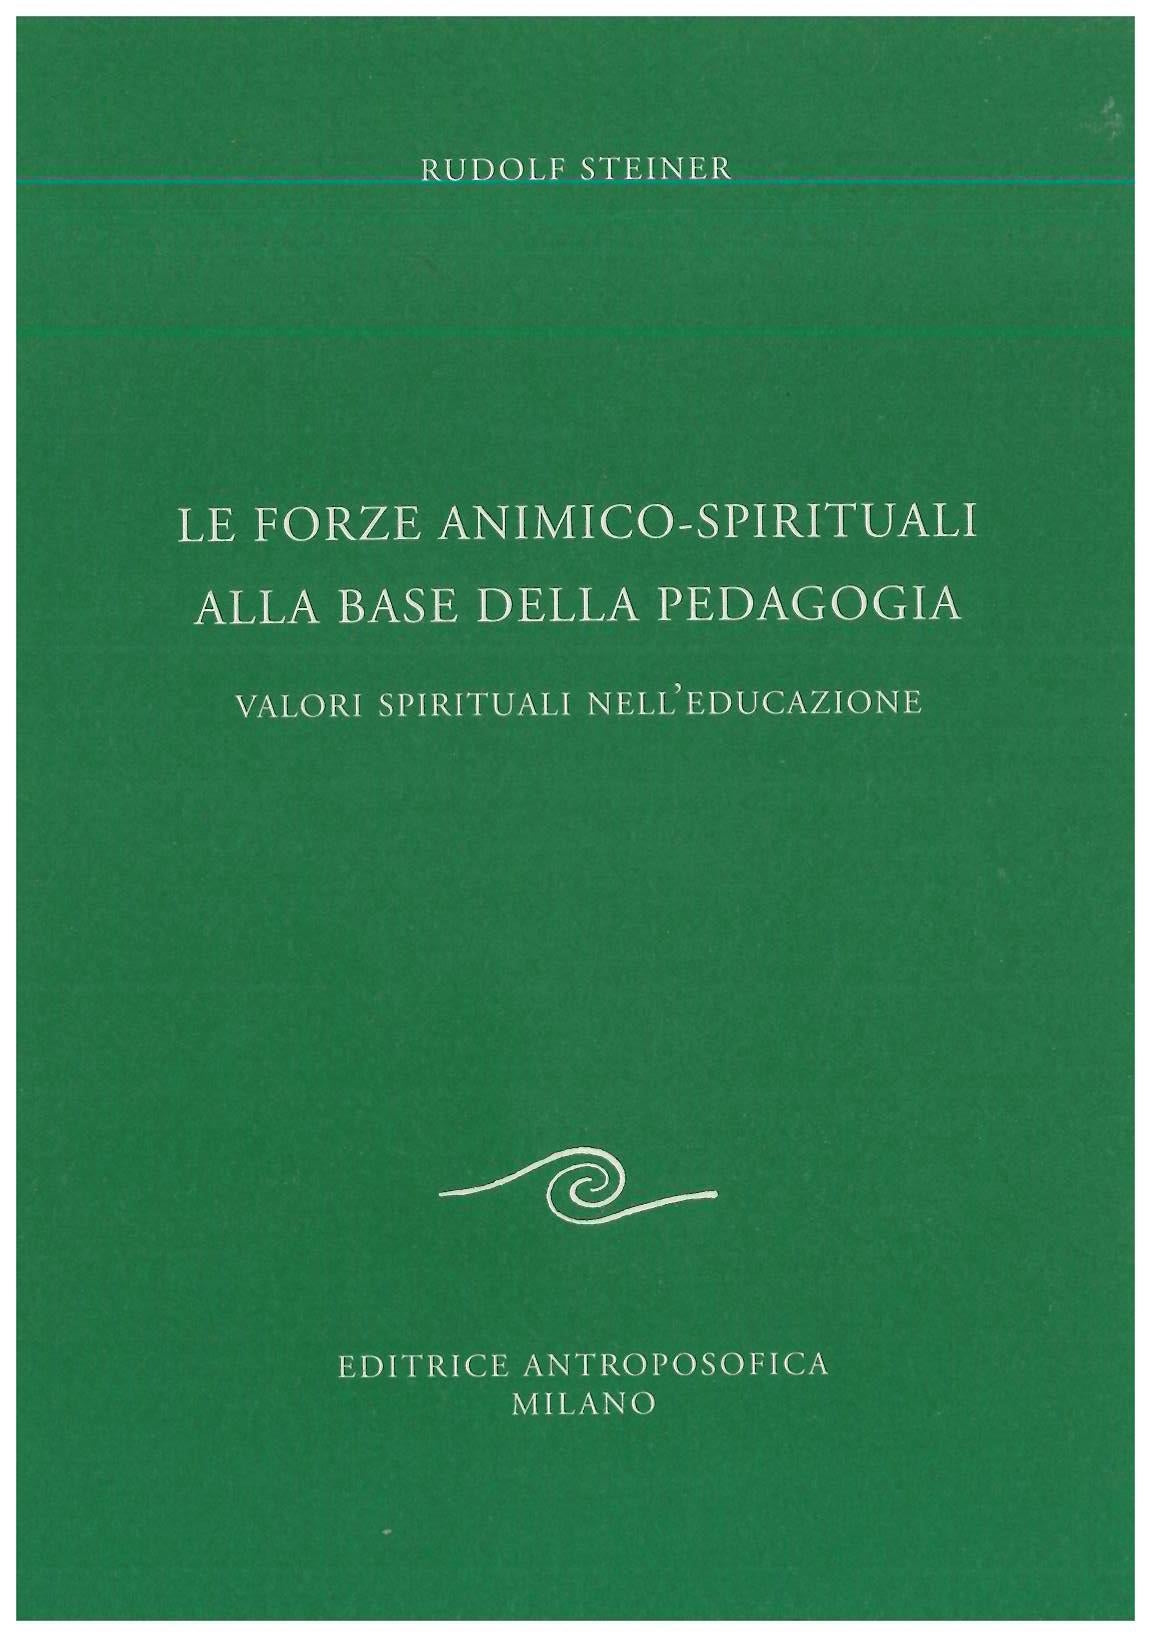 Le forze animico-spirituali alla base della pedagogia - Rudolf Steiner